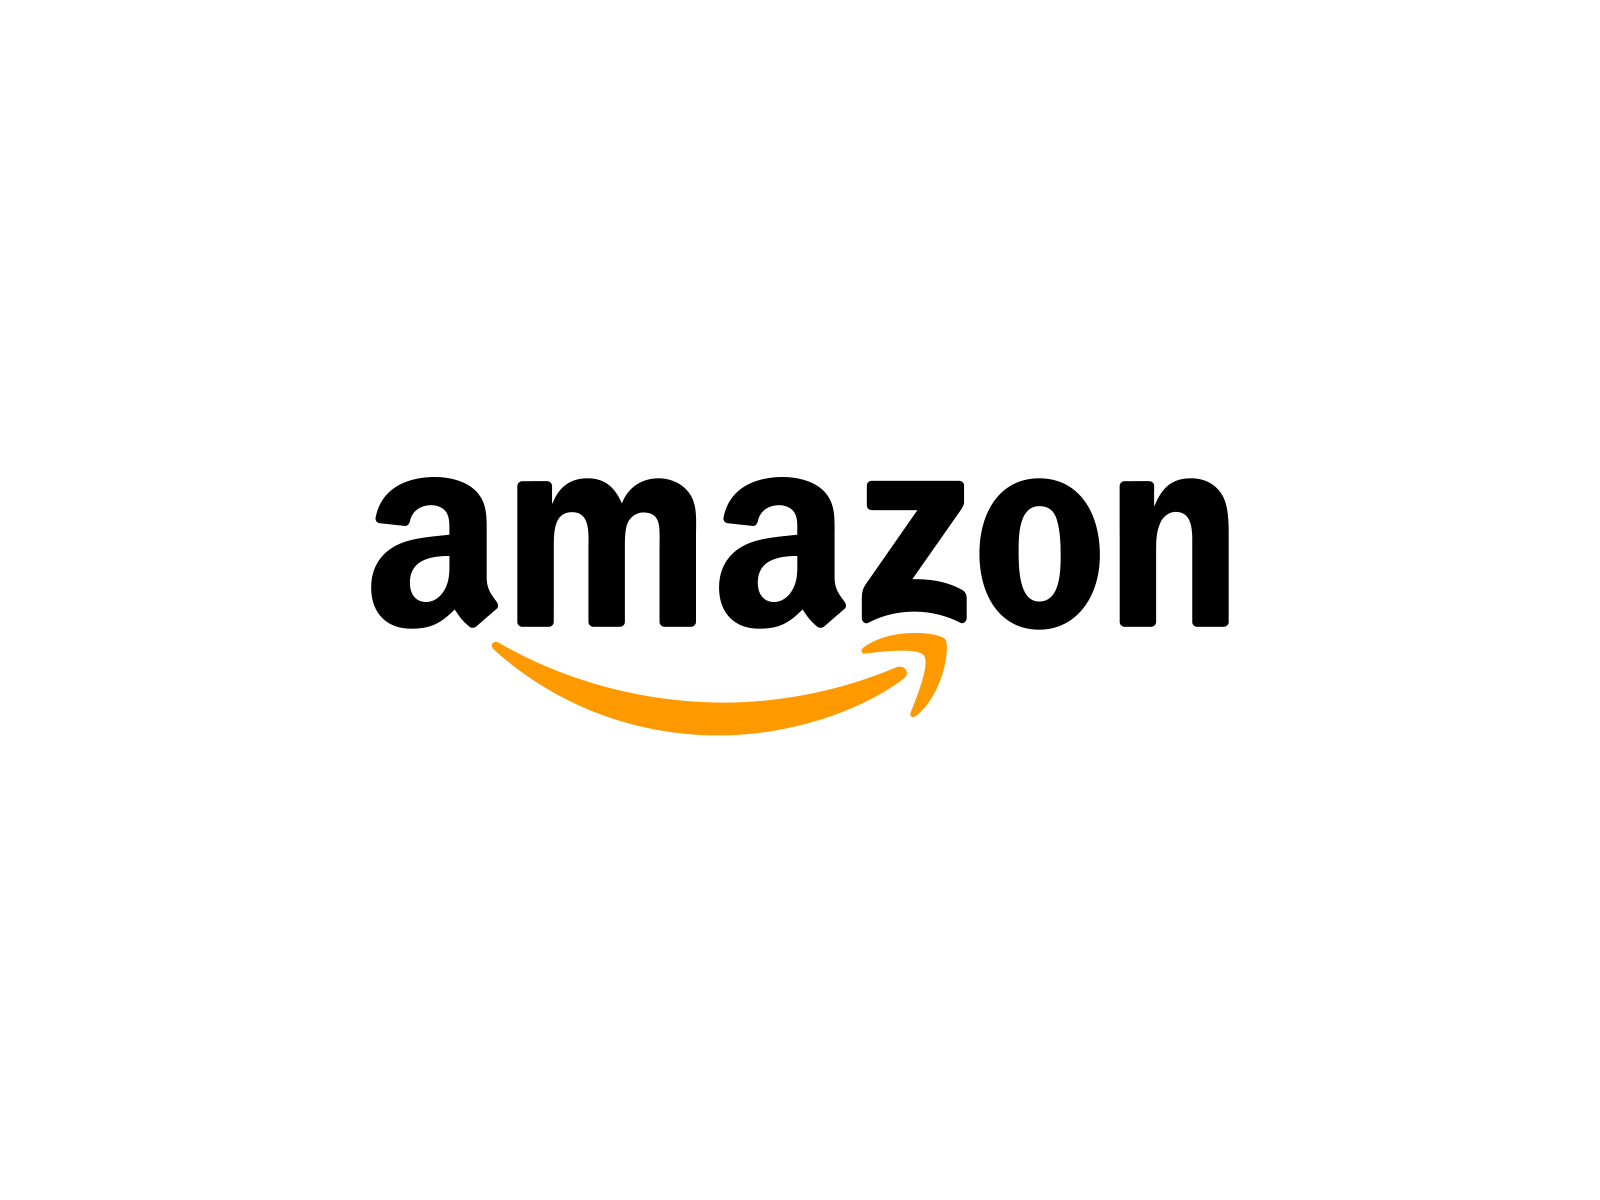 Amazon logo Animation